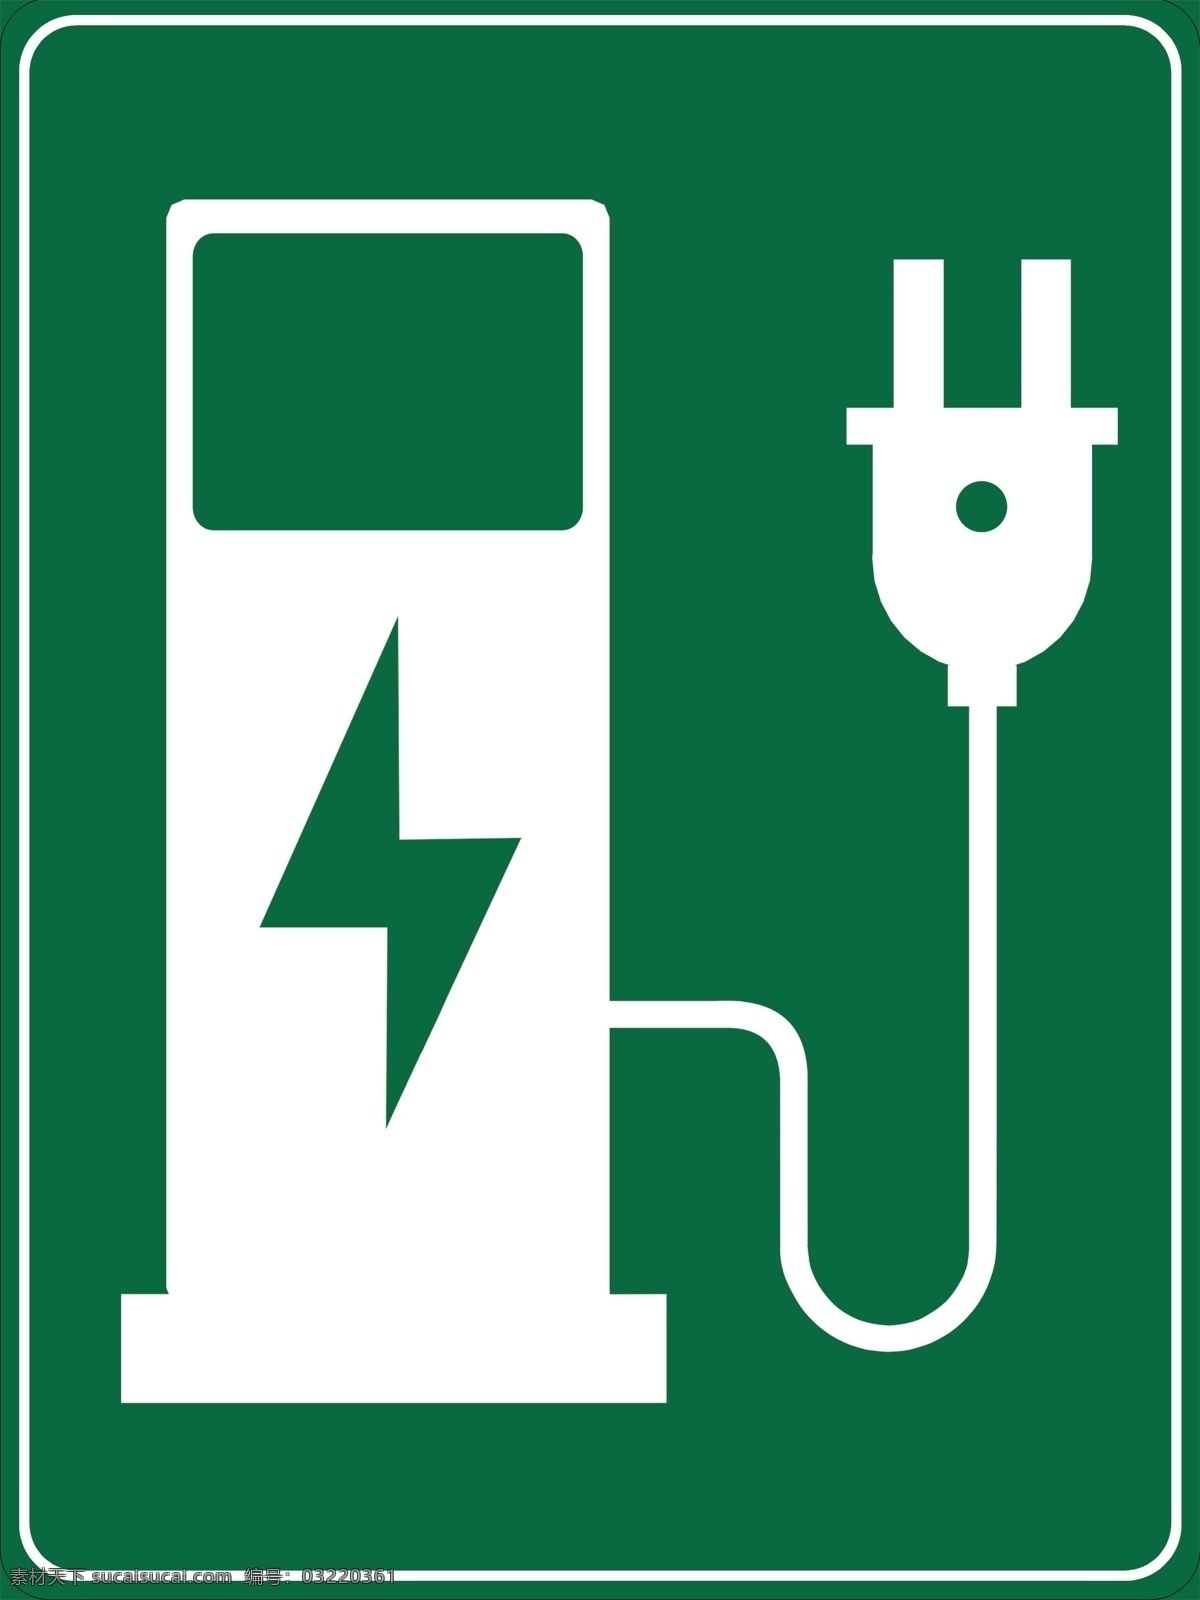 充电 充电标示 充电标志 公共场合充电 标示 标志 电瓶车充电 电动车充电